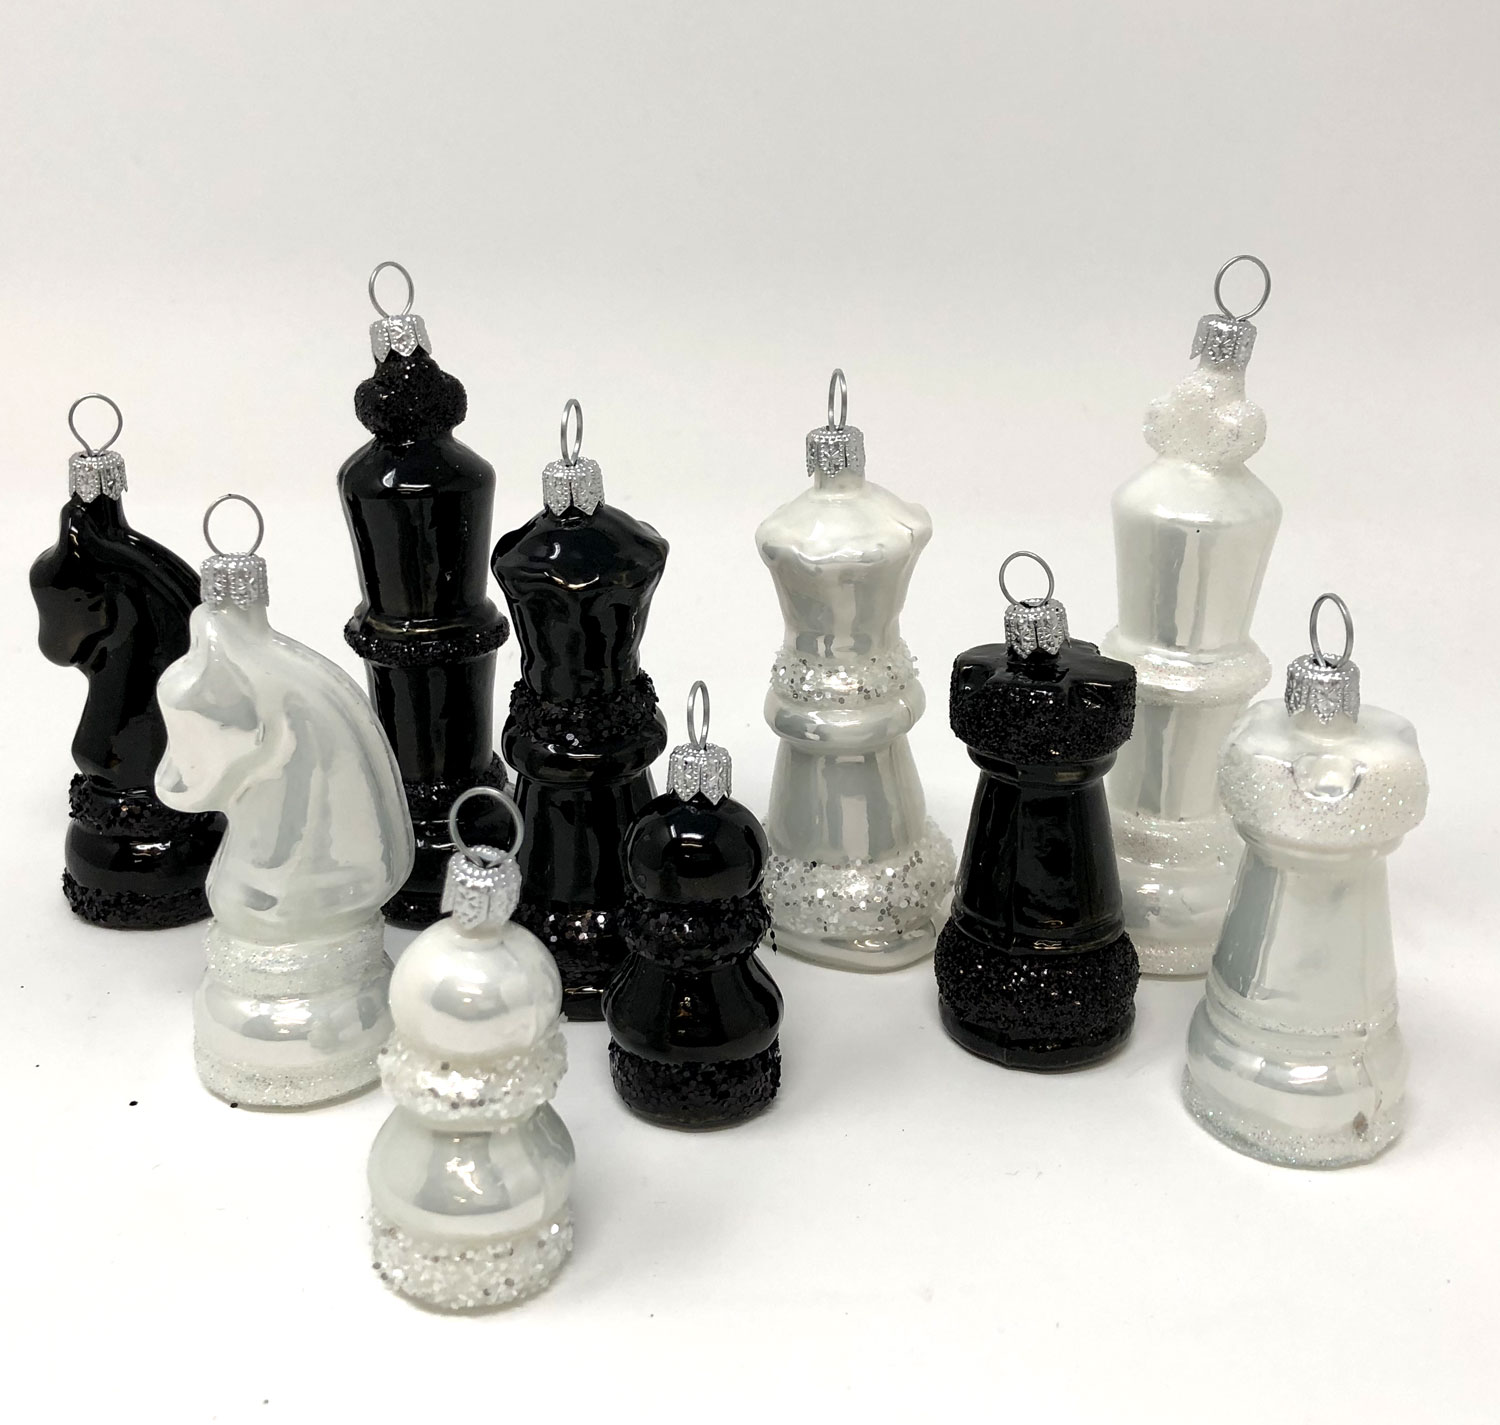 Weihnachtsanhänger Schachfigur - Dame (schwarz)